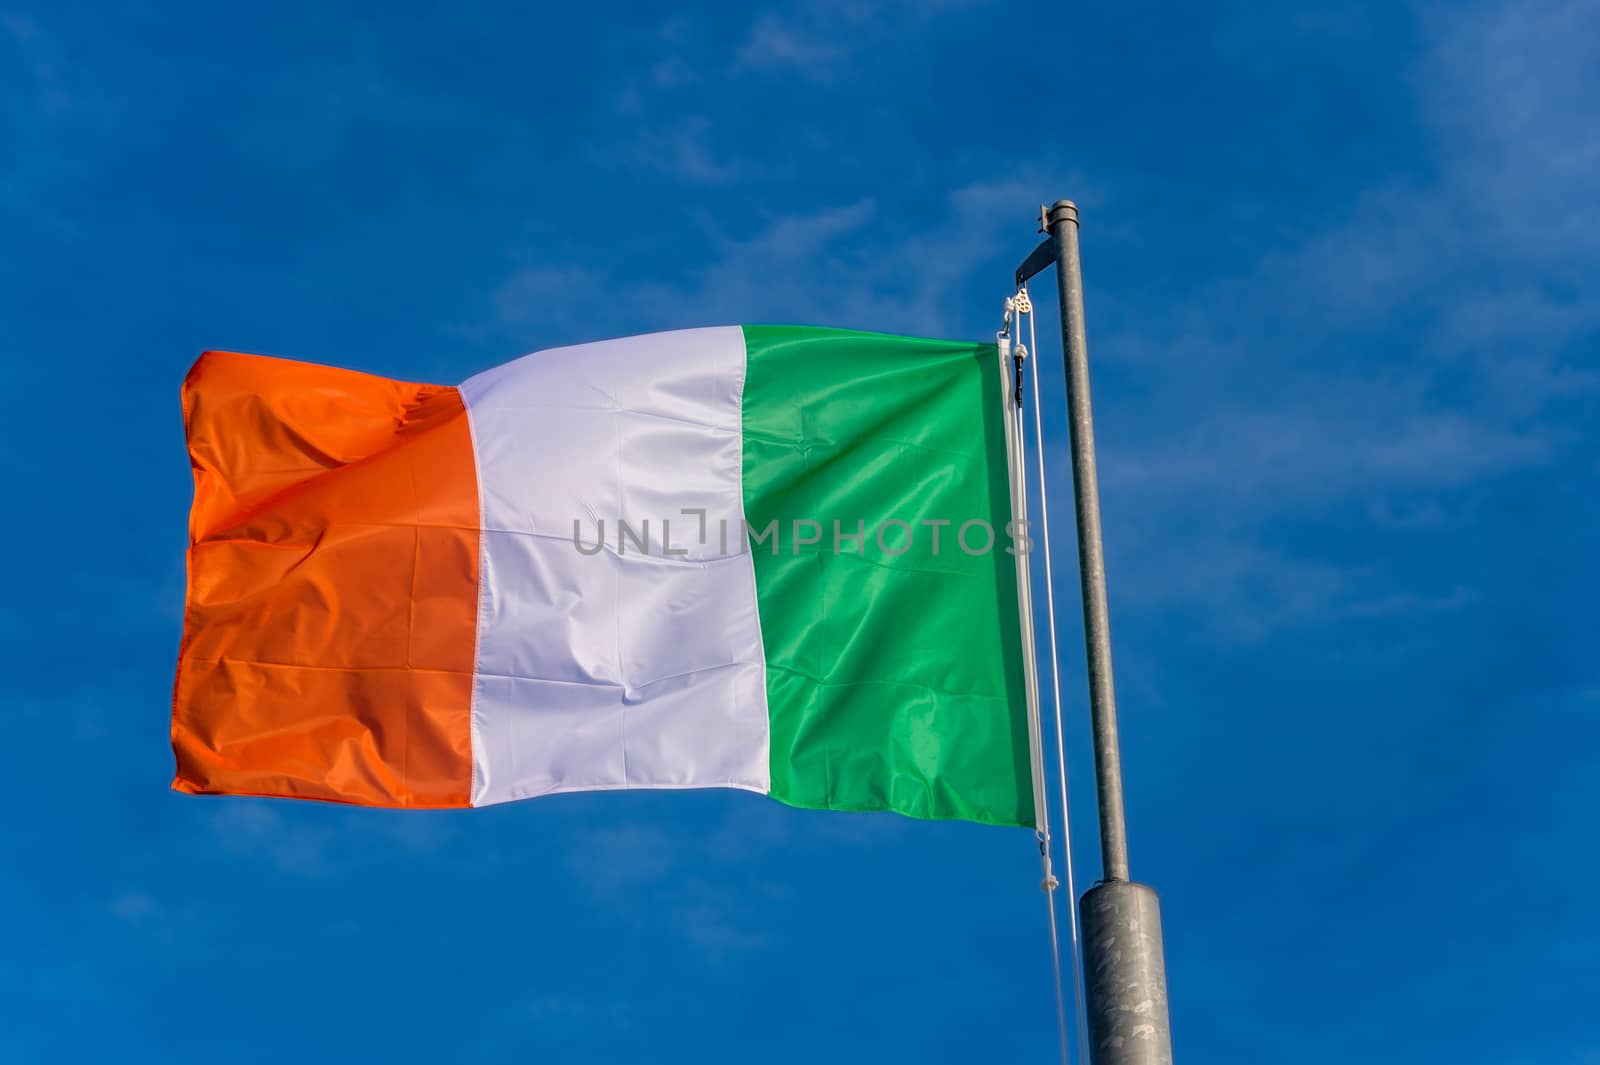 Italian flag waving against blue sky in Boulogne sur Mer, France.